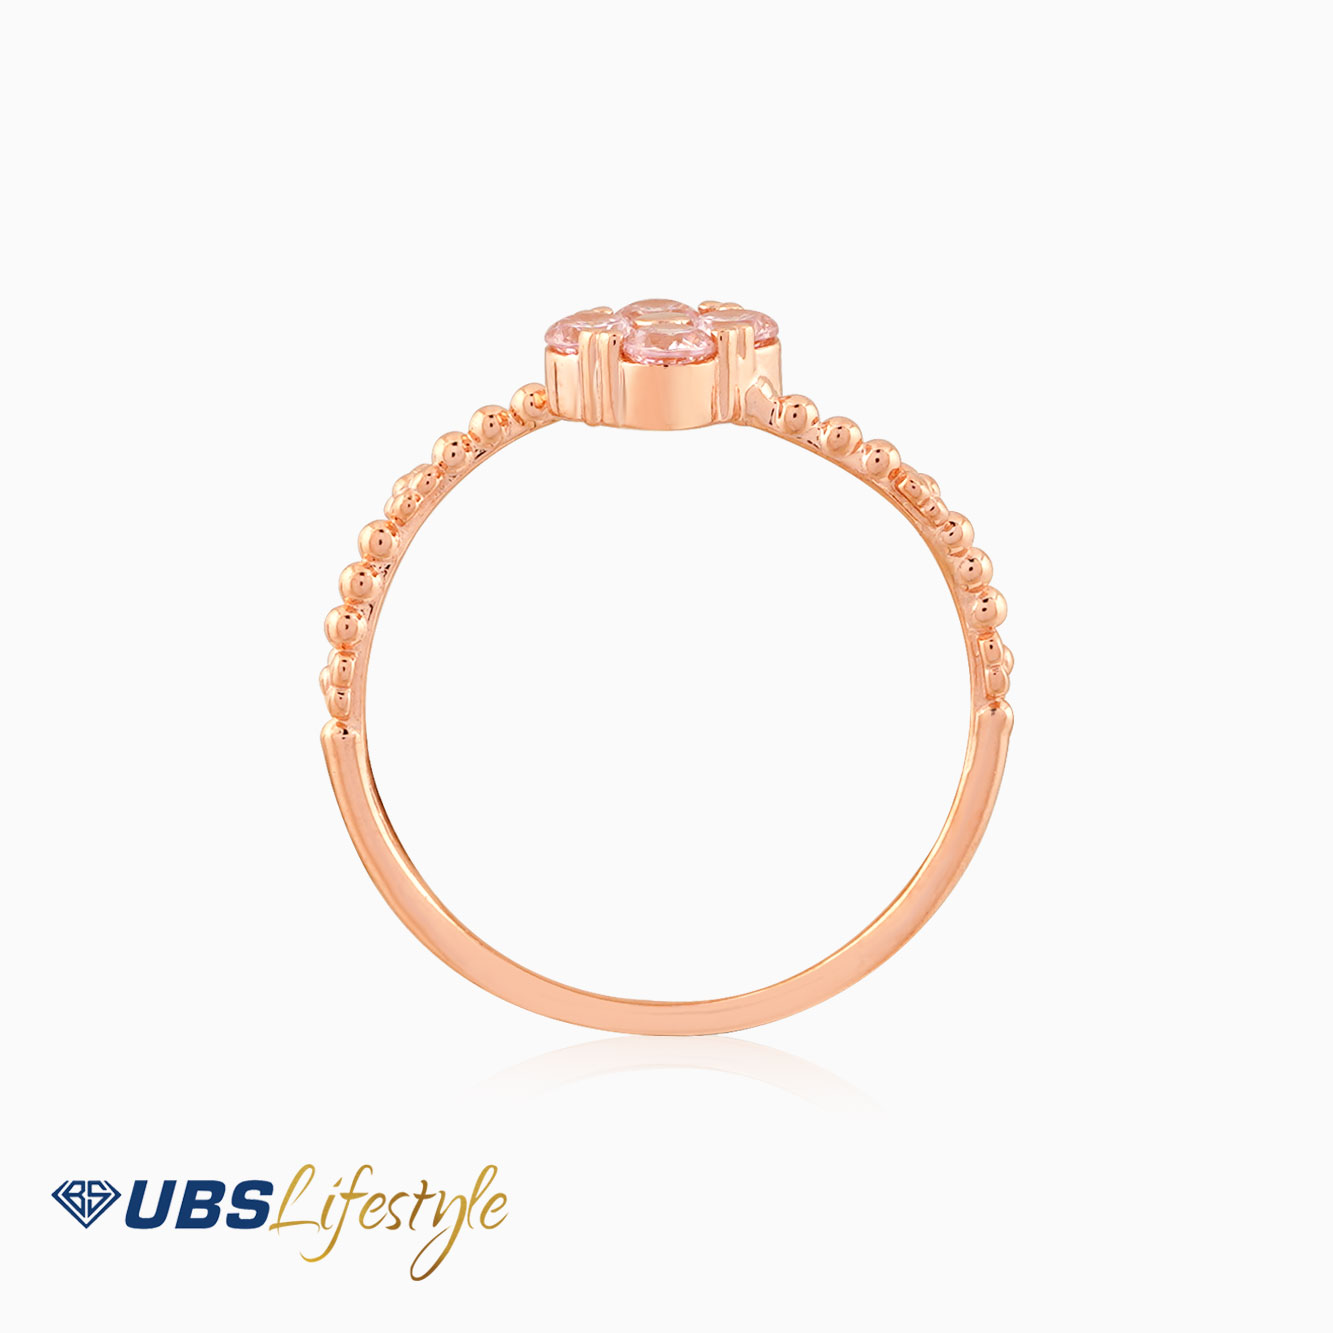 UBS Cincin Emas - CC16008RP - Batu Pink -  17K